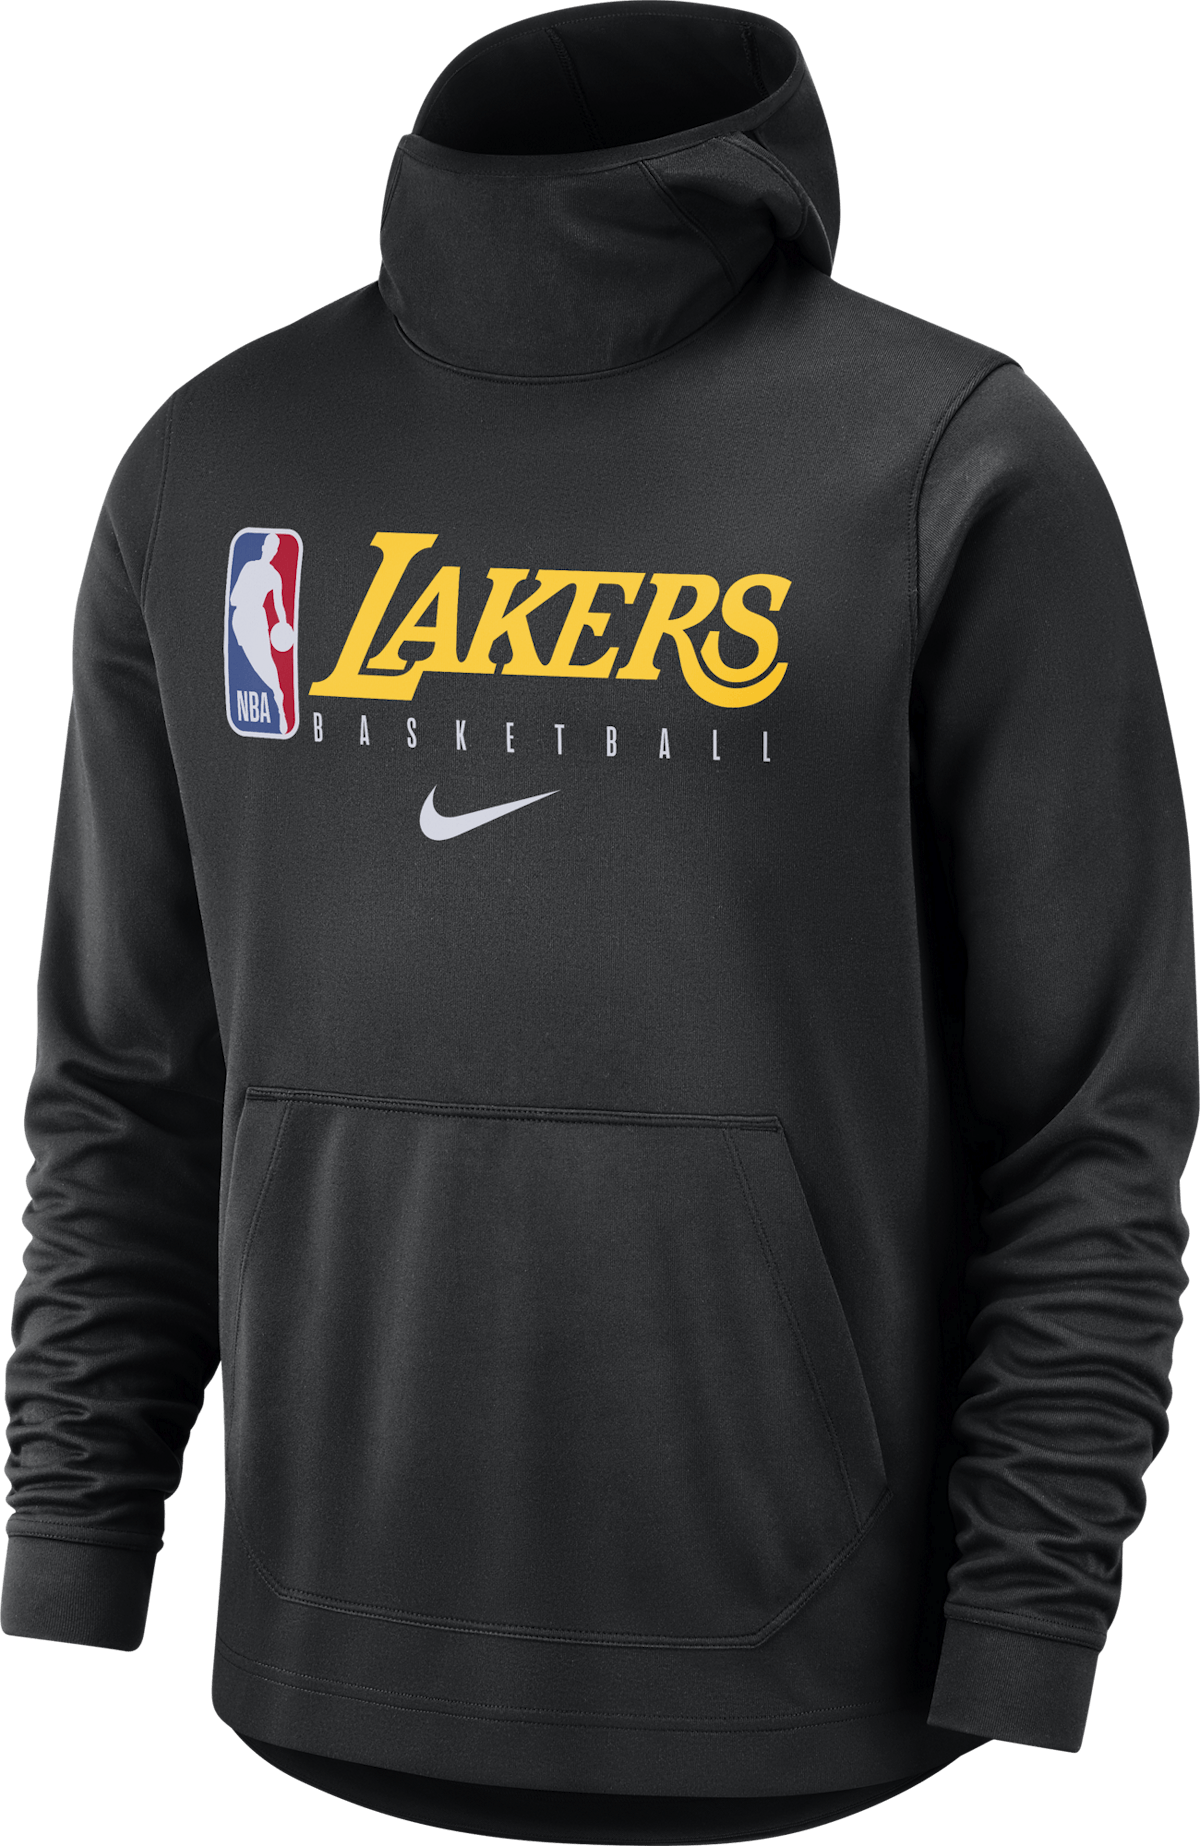 Lakers Spotlight Hoodie //